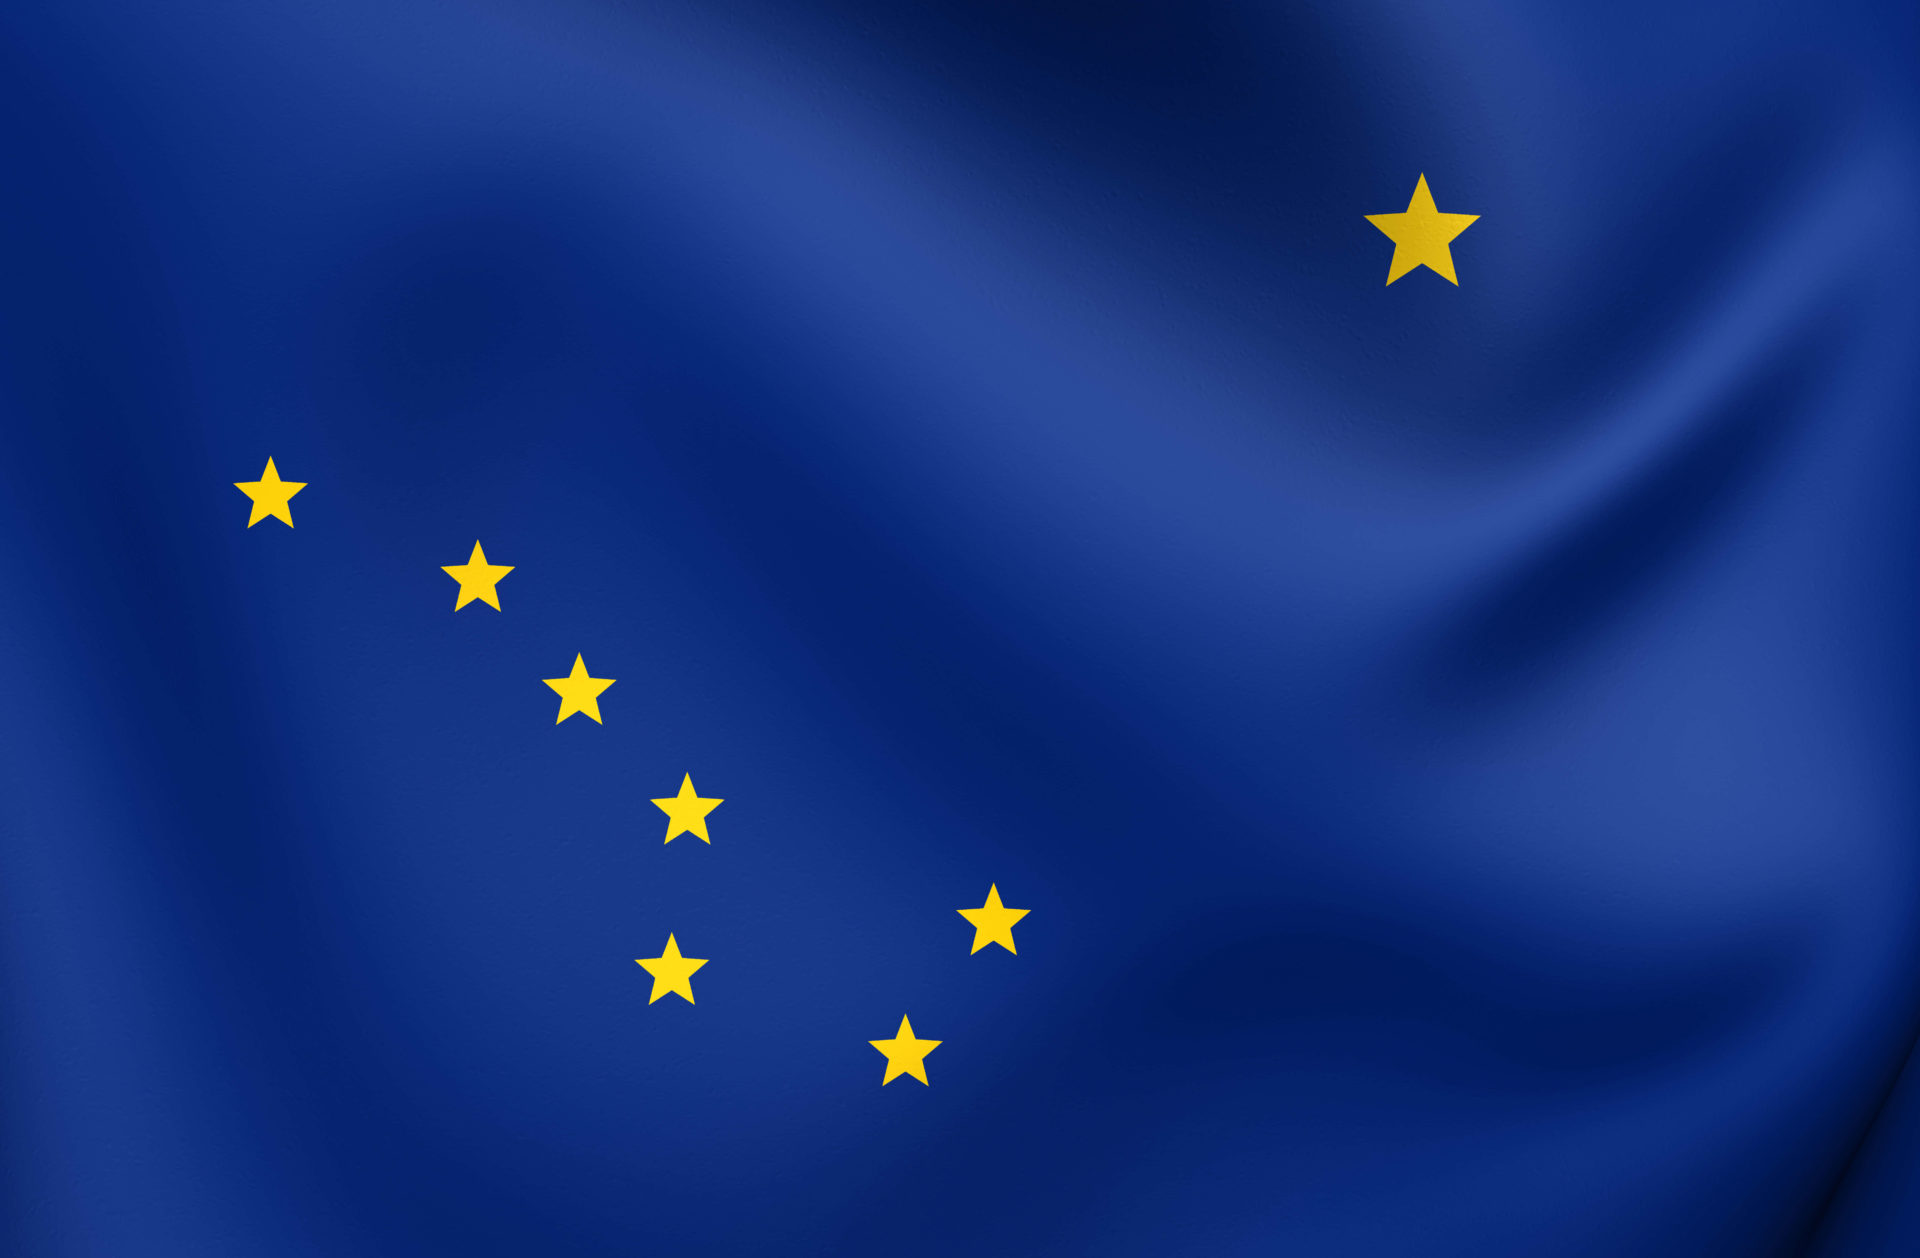 An image of the Alaska state flag.